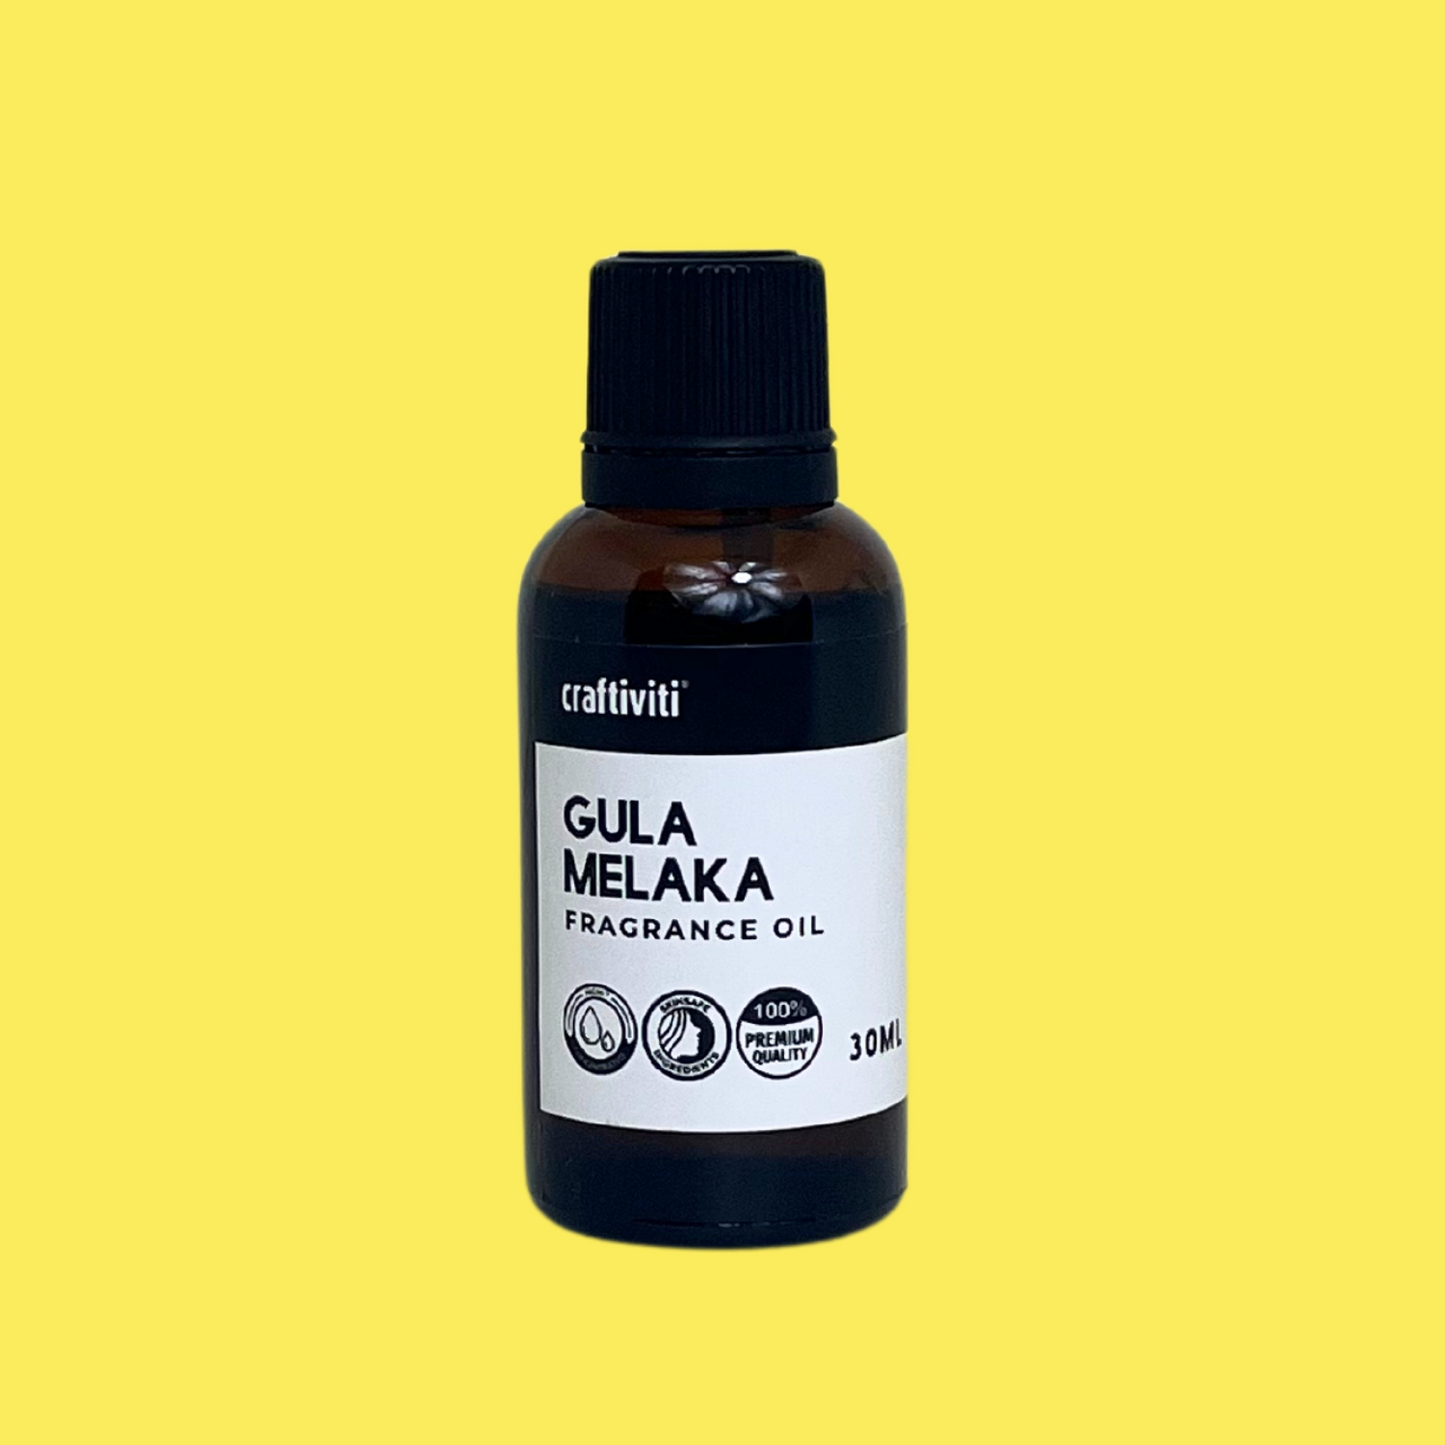 Gula Melaka Fragrance Oil